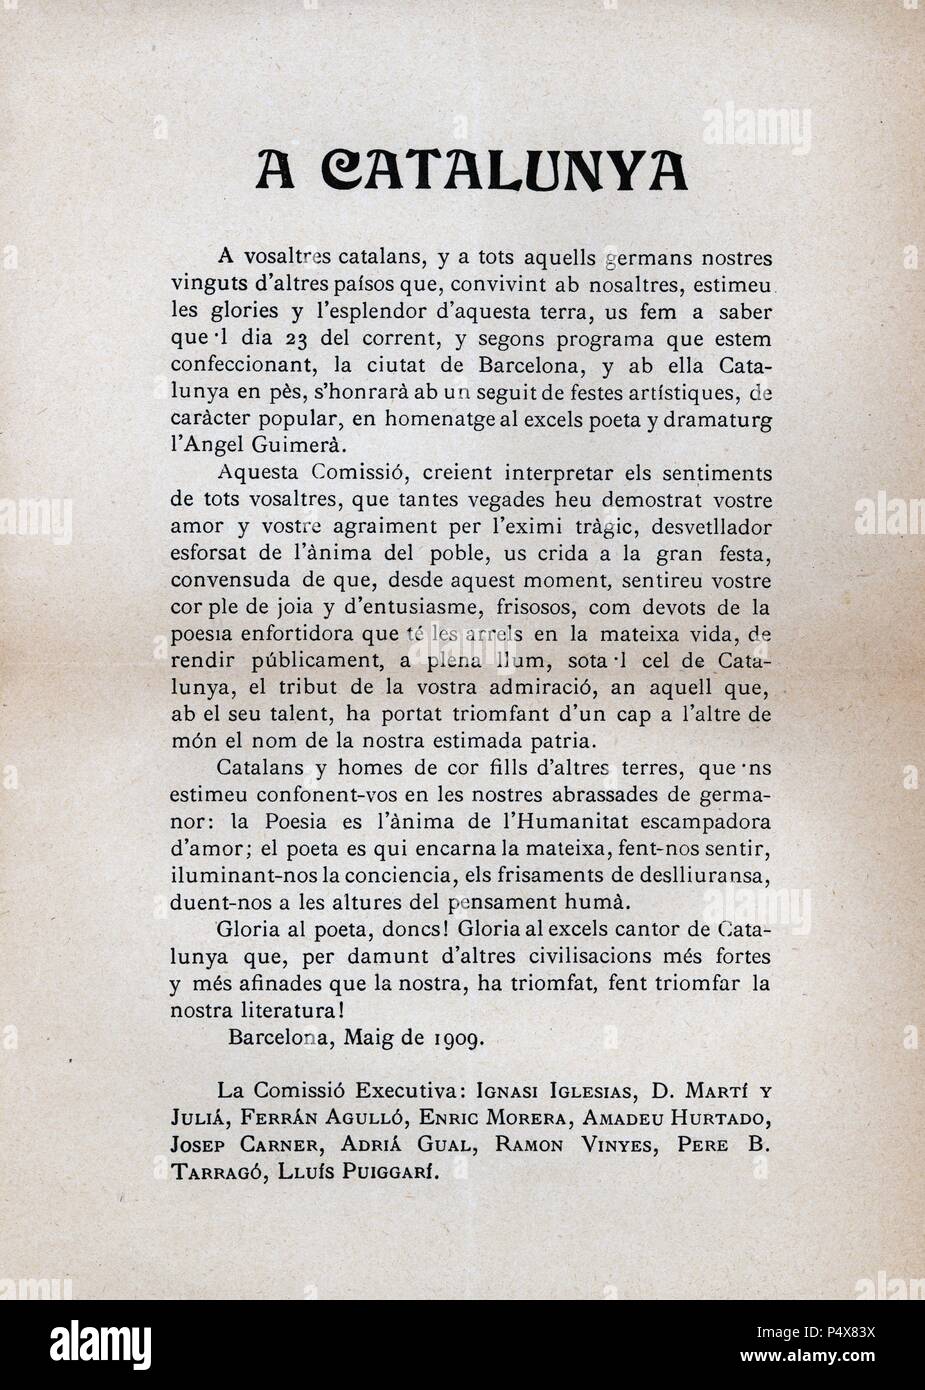 Proclama de la Comisión de Homenaje a Angel Guimerá llevado a cabo en Barcelona, en mayo de 1909. Stock Photo